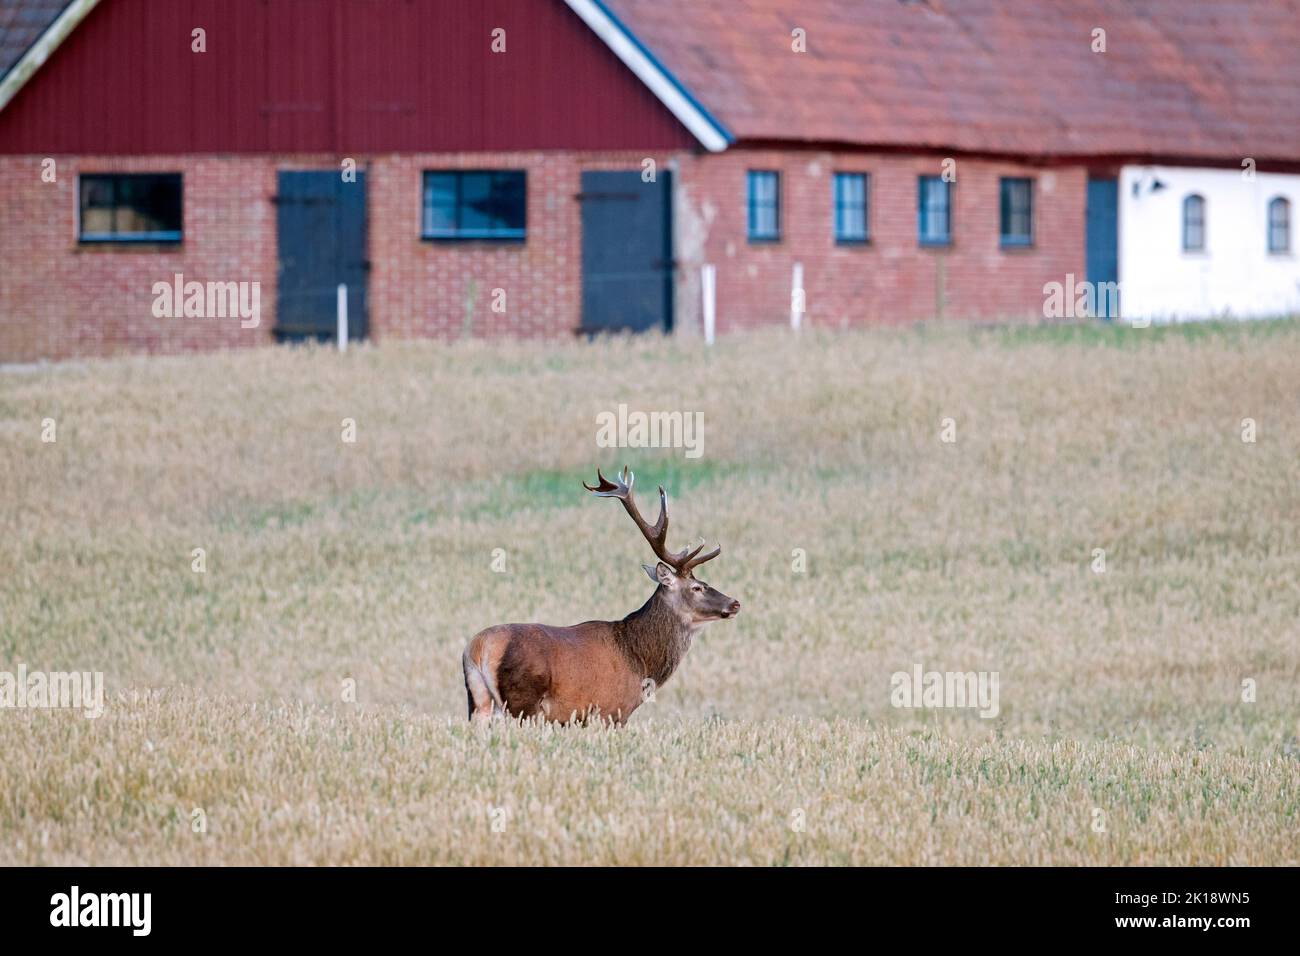 Ciervo rojo (Cervus elaphus) ciervo solitario parado en el campo de cereales / campo de trigo en frente del granero / edificio de la granja en verano, Scania / Skåne, Suecia Foto de stock